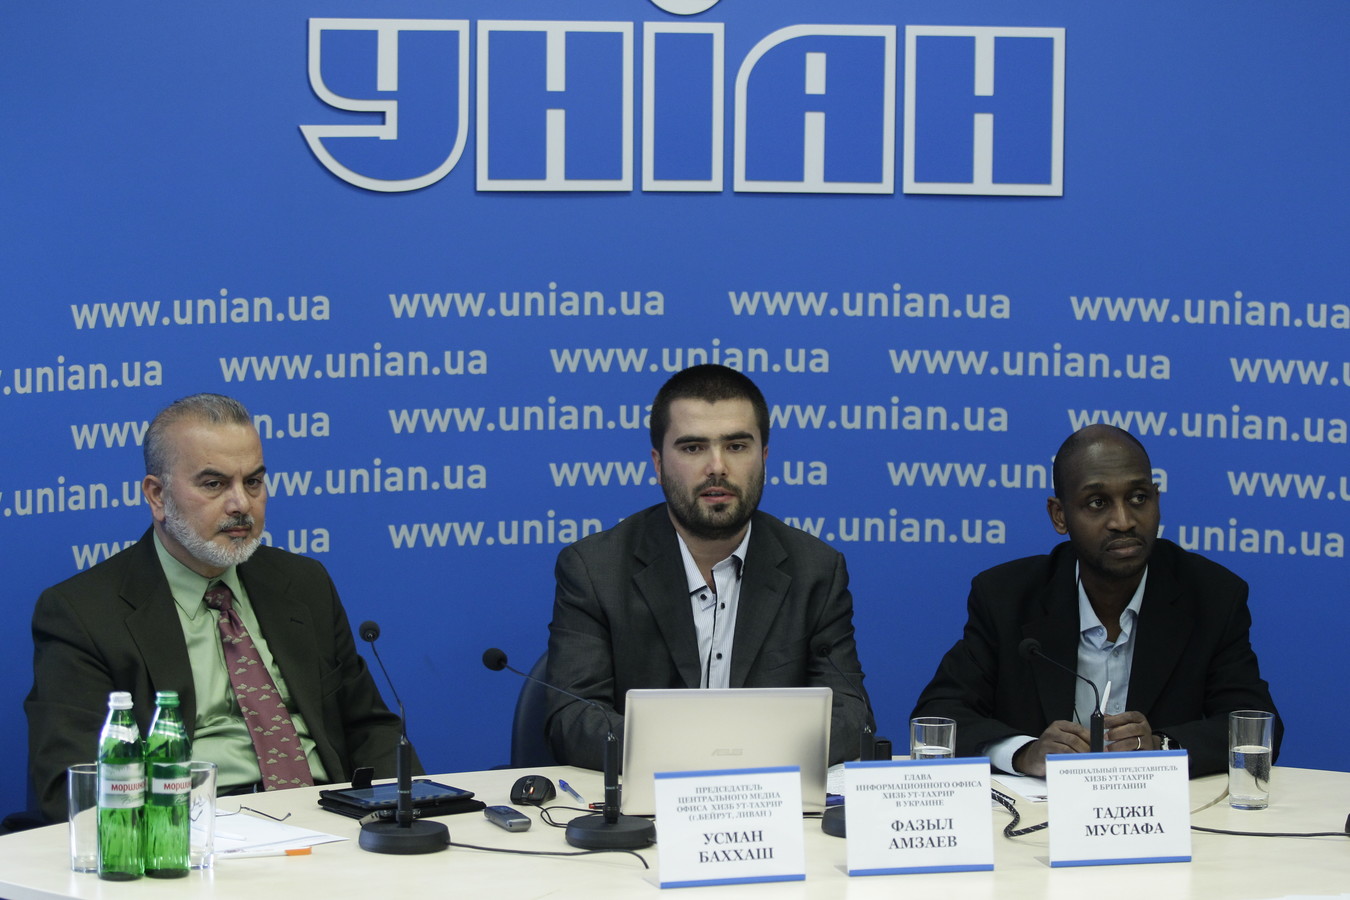 Фазил Амзаєв, Осман Баххаш та Таджі Мустафа розповіли про форум Хізб ут-Тахрір, який проходив 7-8 жовтня 2013 року в м.Сімферополь.